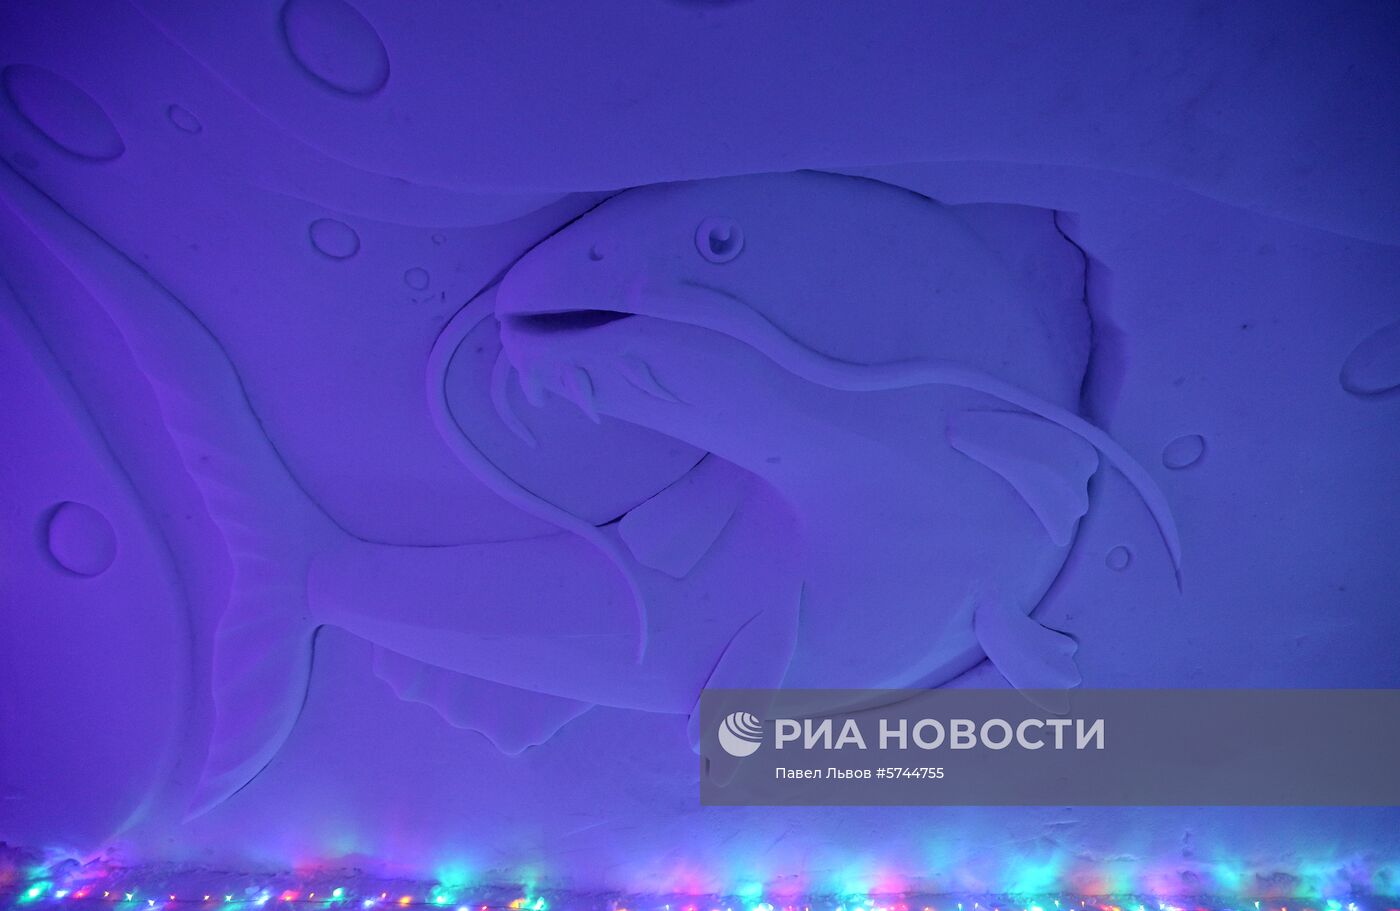 Фестиваль снежно-ледовой скульптуры "Снеголед" в Мурманской области